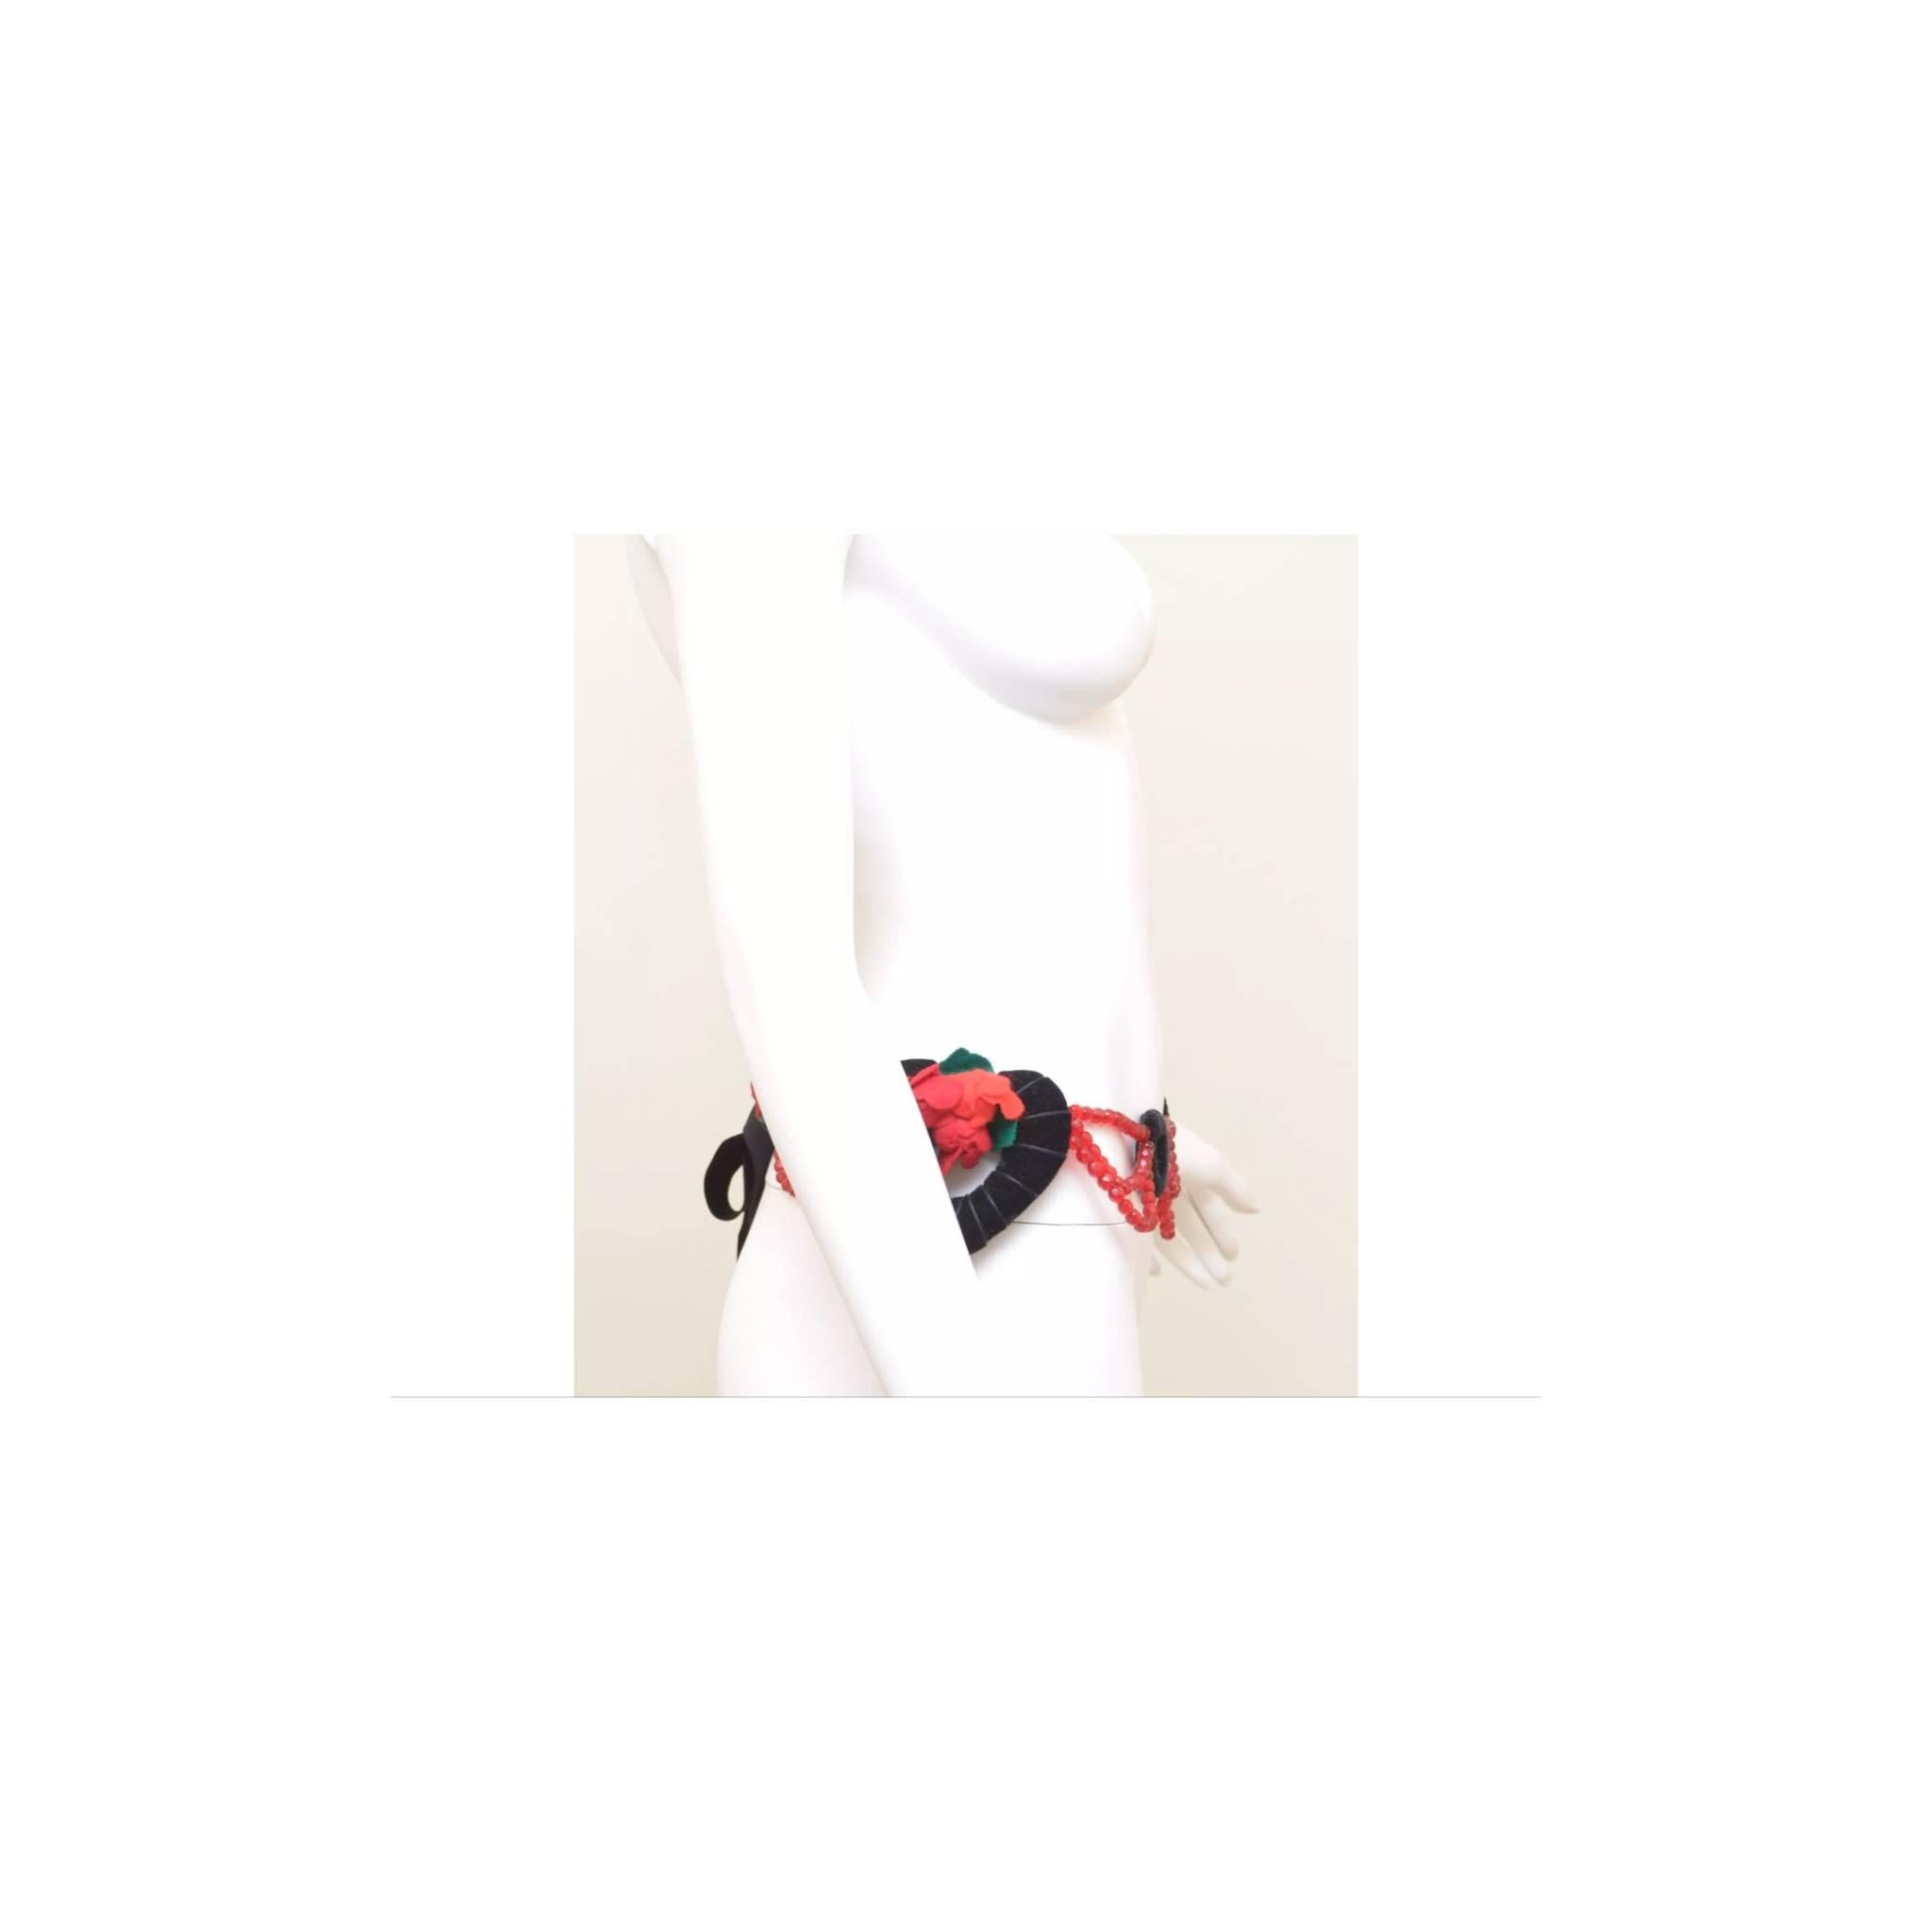 Vintage Moschino Samt Filz Glasperlen Herz Rose Quaste Gürtel Halskette

Der Krawattengürtel von Moschino aus Samt und Stoff kann auch als Halskette getragen werden. Mit roter Perlenverzierung, Stoffrosen, Samtkreisen und Herzen. Das mit Samt